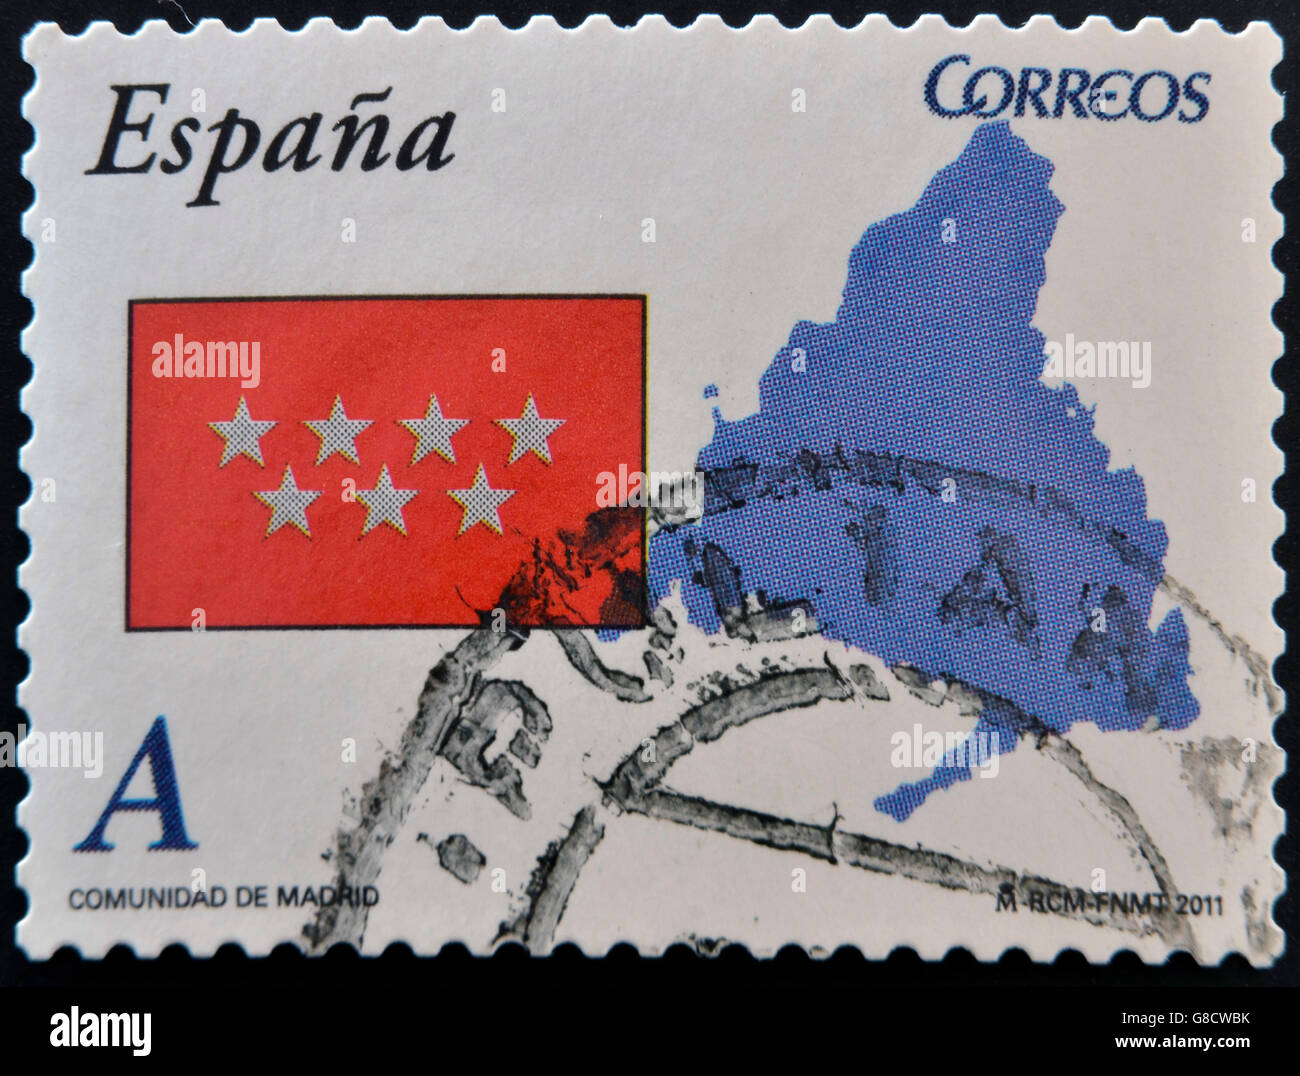 Spanien - ca. 2011: Eine Briefmarke gedruckt in Spanien zeigt Flagge und Karten der autonomen Gemeinschaft von Madrid, ca. 2011 Stockfoto